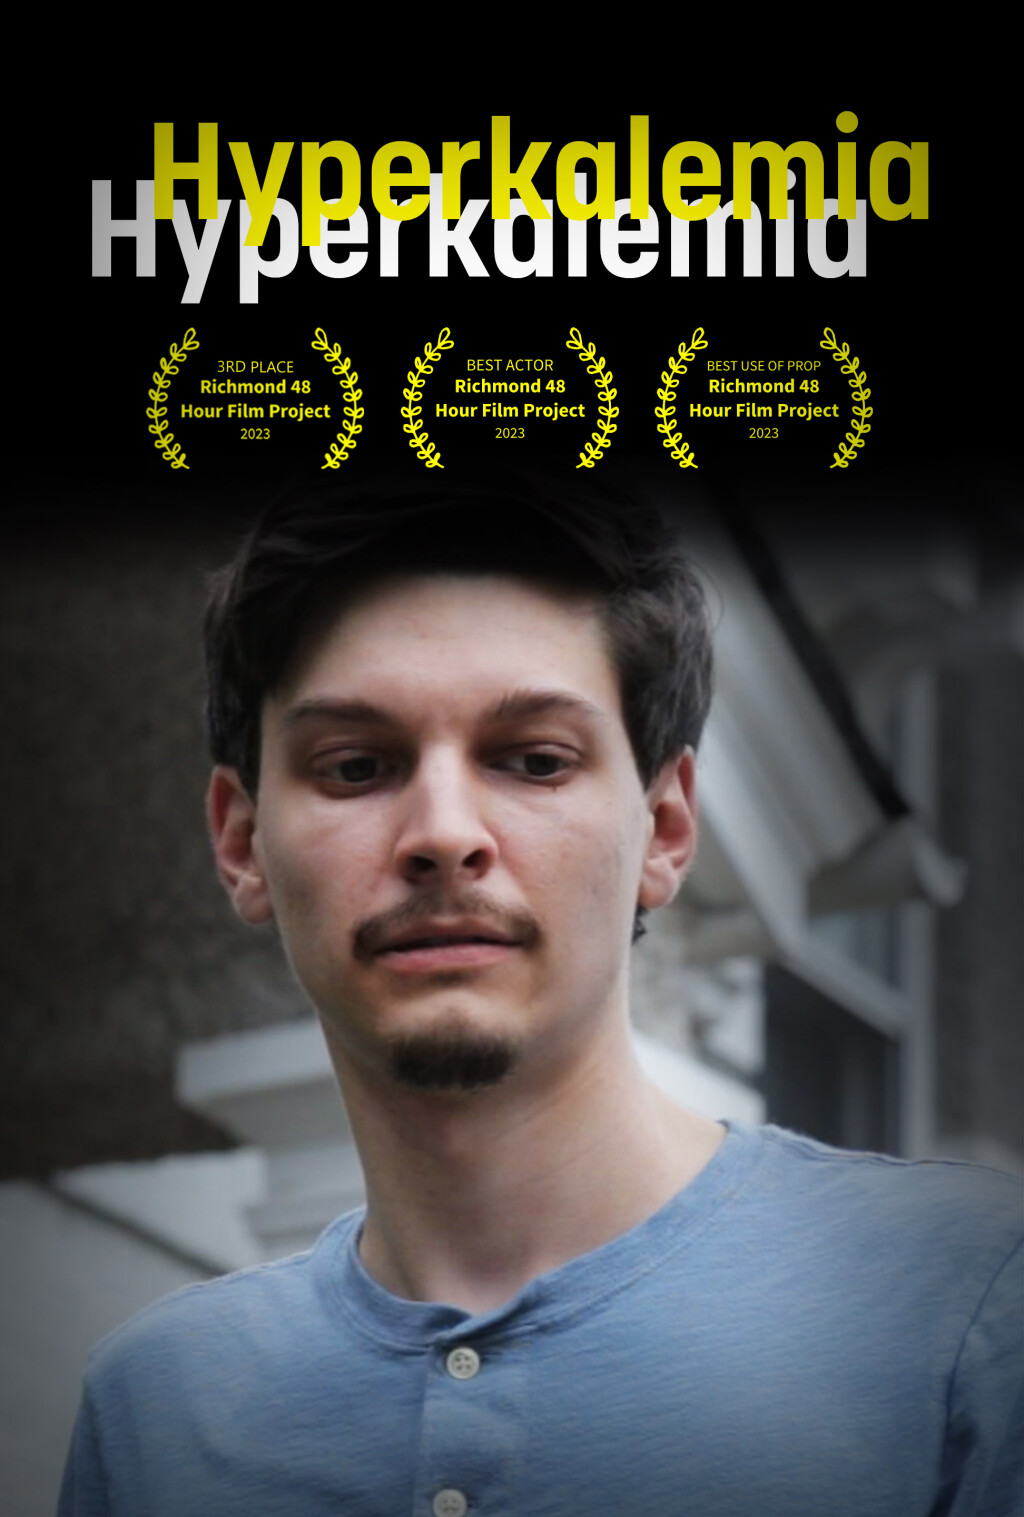 Filmposter for Hyperkalemia